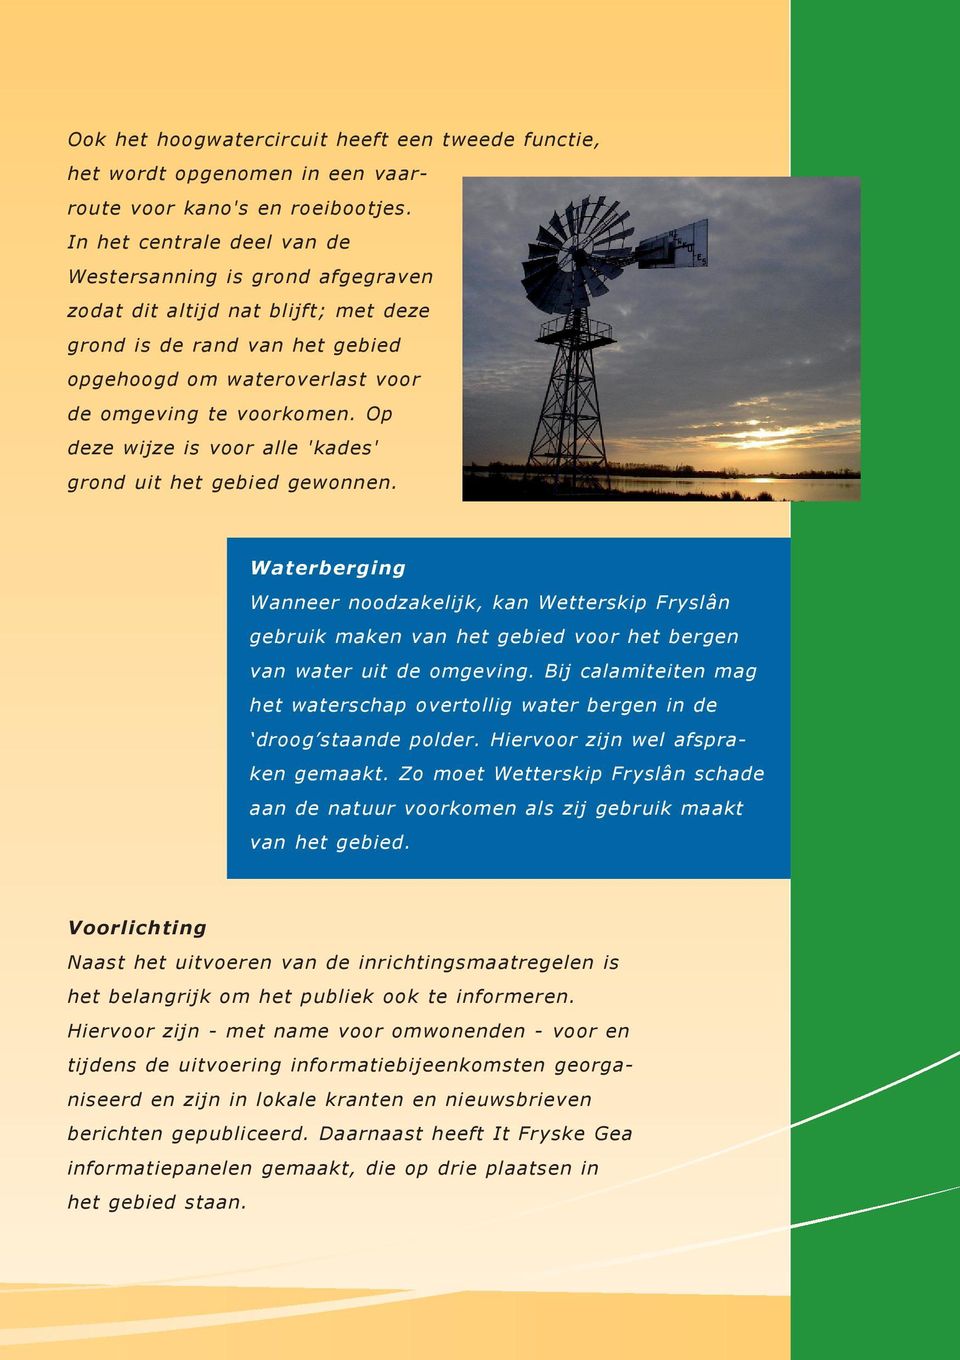 Op deze wijze is voor alle 'kades' grond uit het gebied gewonnen. Waterberging Wanneer noodzakelijk, kan Wetterskip Fryslân gebruik maken van het gebied voor het bergen van water uit de omgeving.